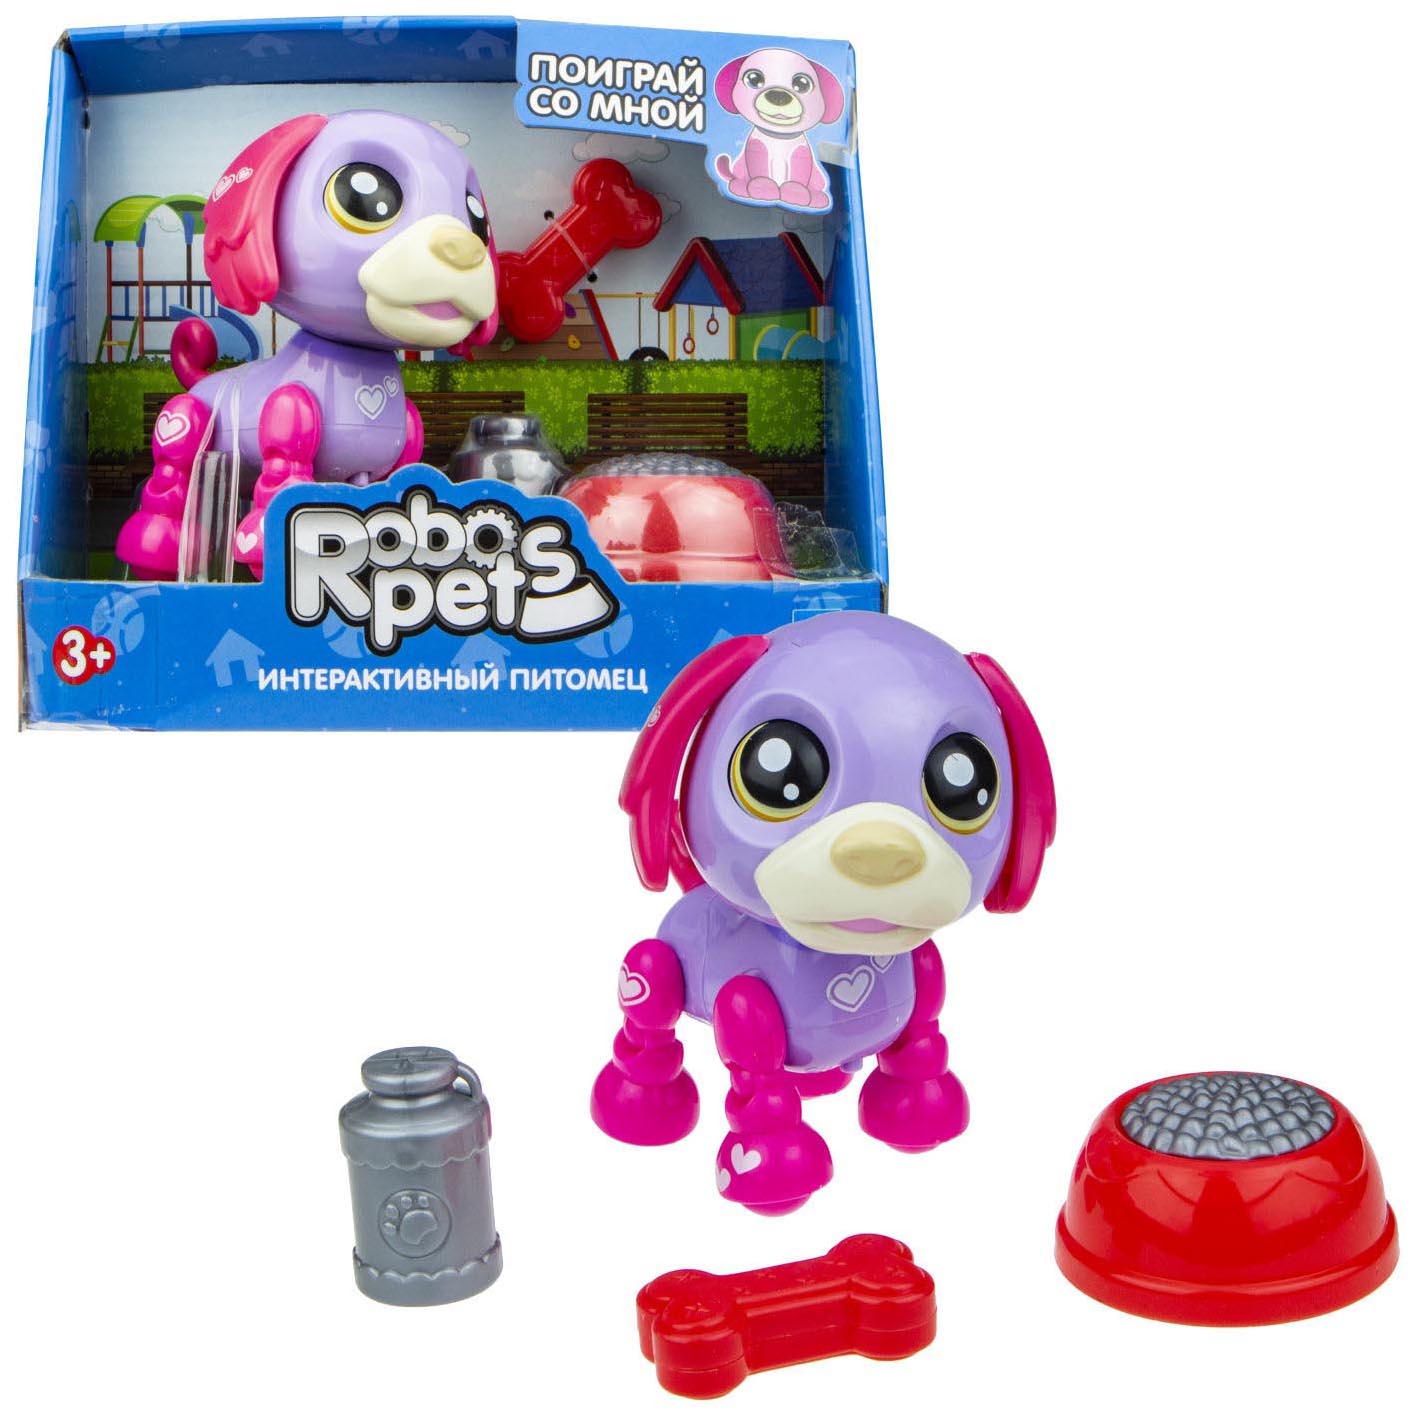 Интерактивная игрушка 1toy Robo Pets Озорной щенок Т16938 фиолетово-фуксия интерактивная собака 1toy robo pets робо щенок пудель бело голубой т21087